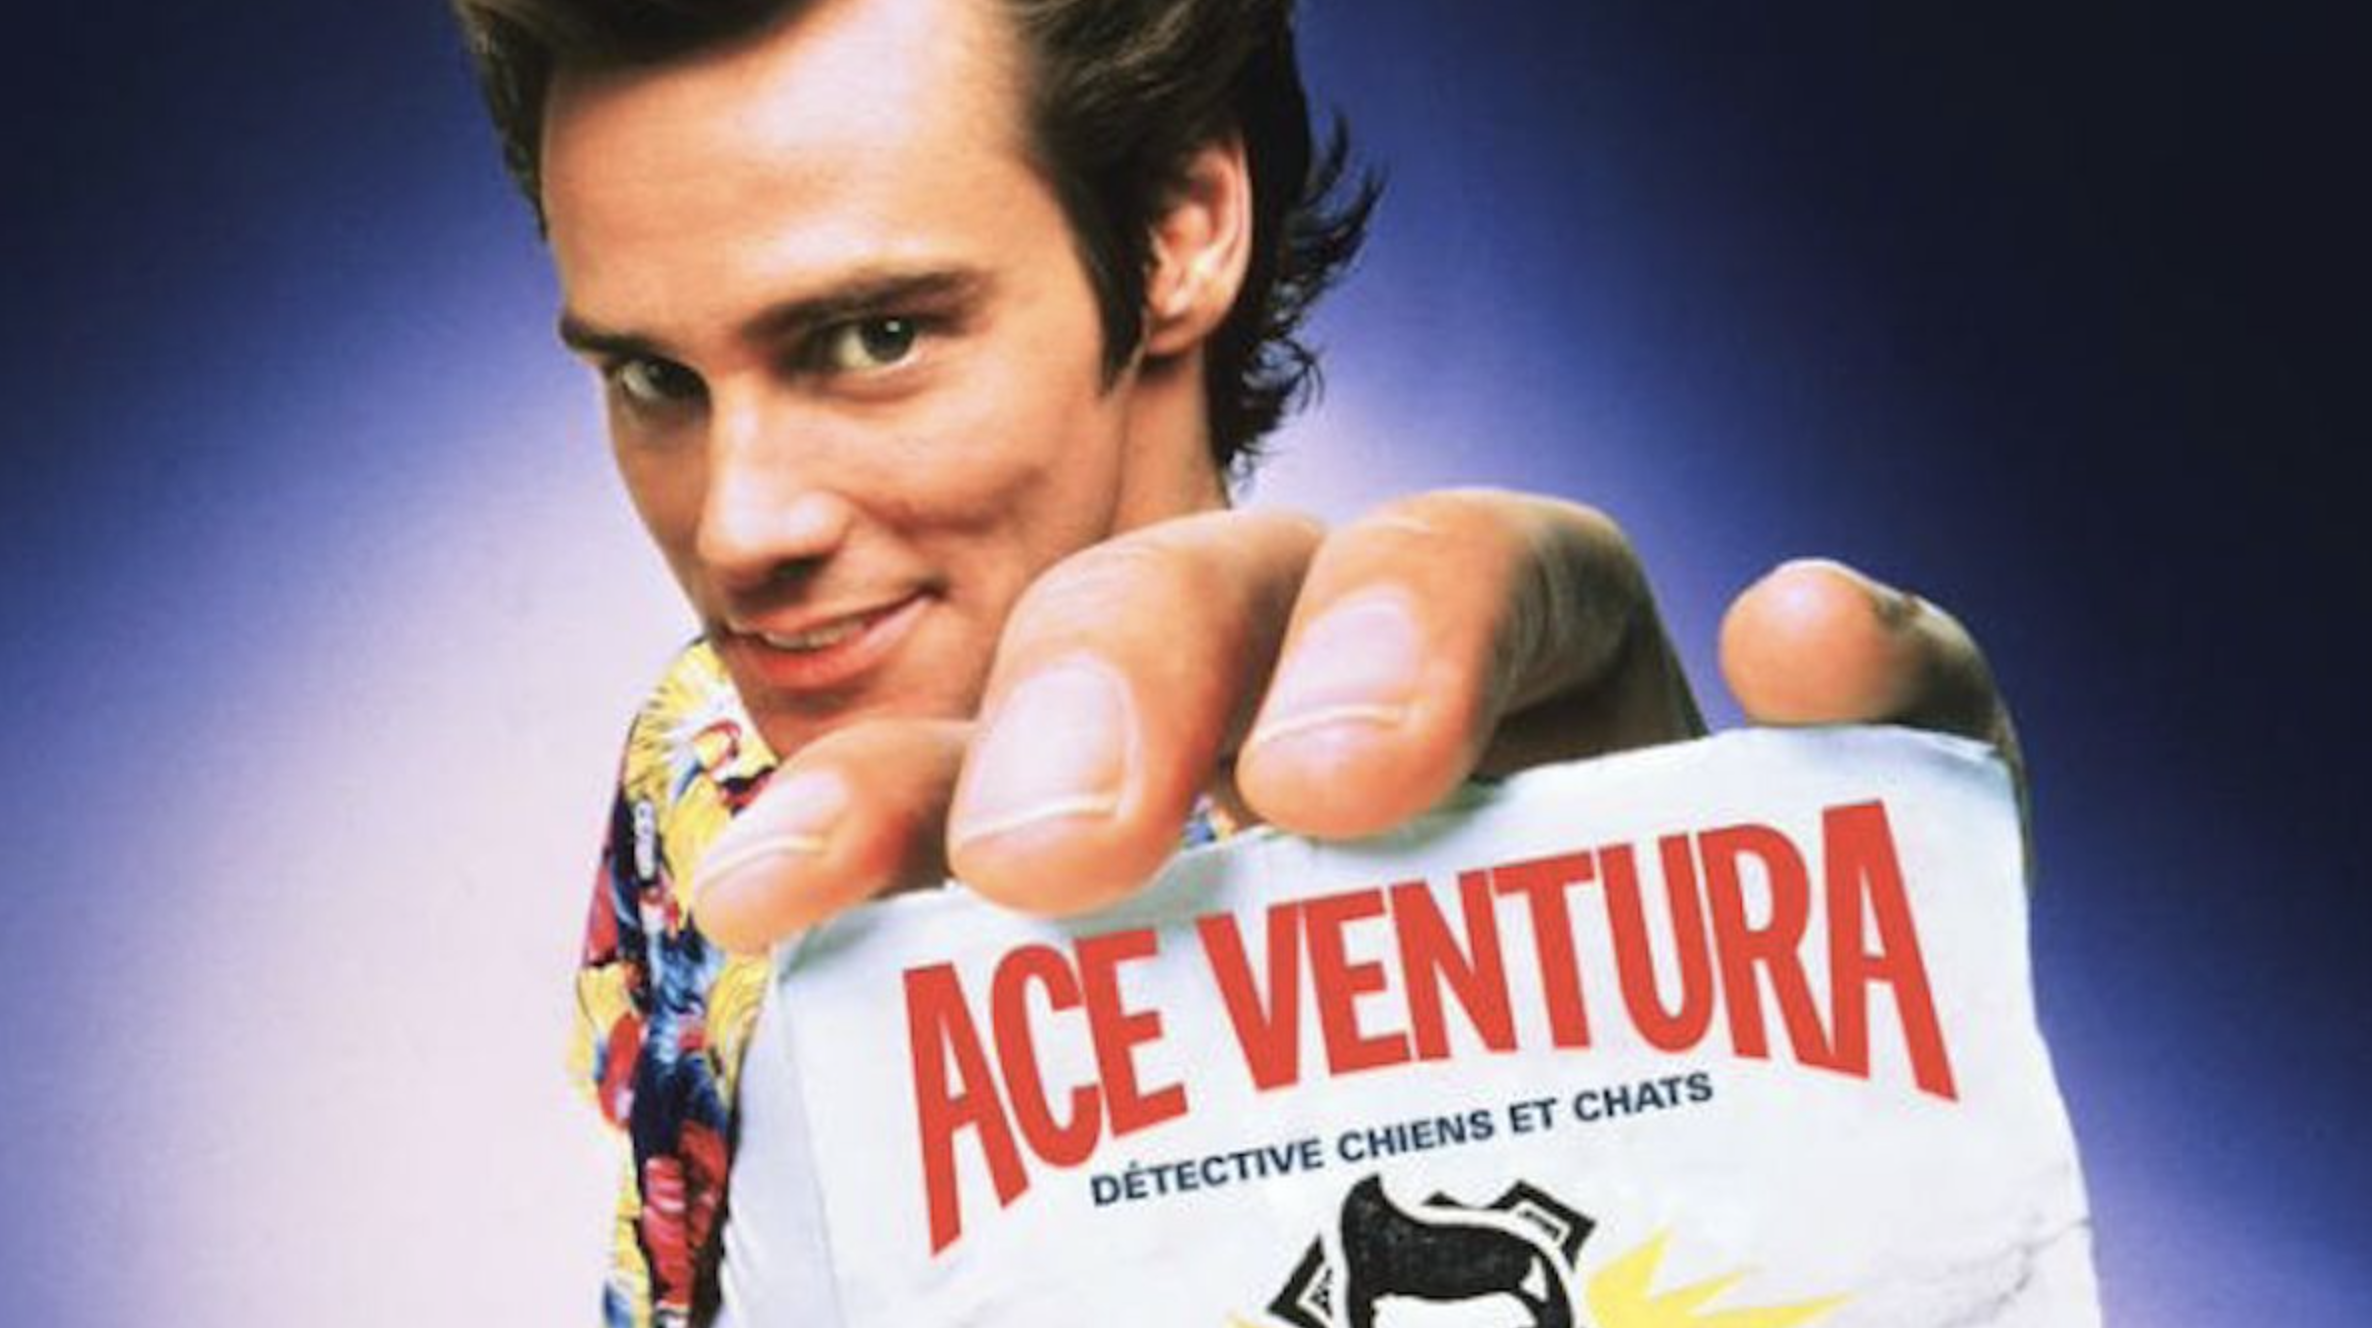 Ace Ventura : un nouveau film serait en préparation